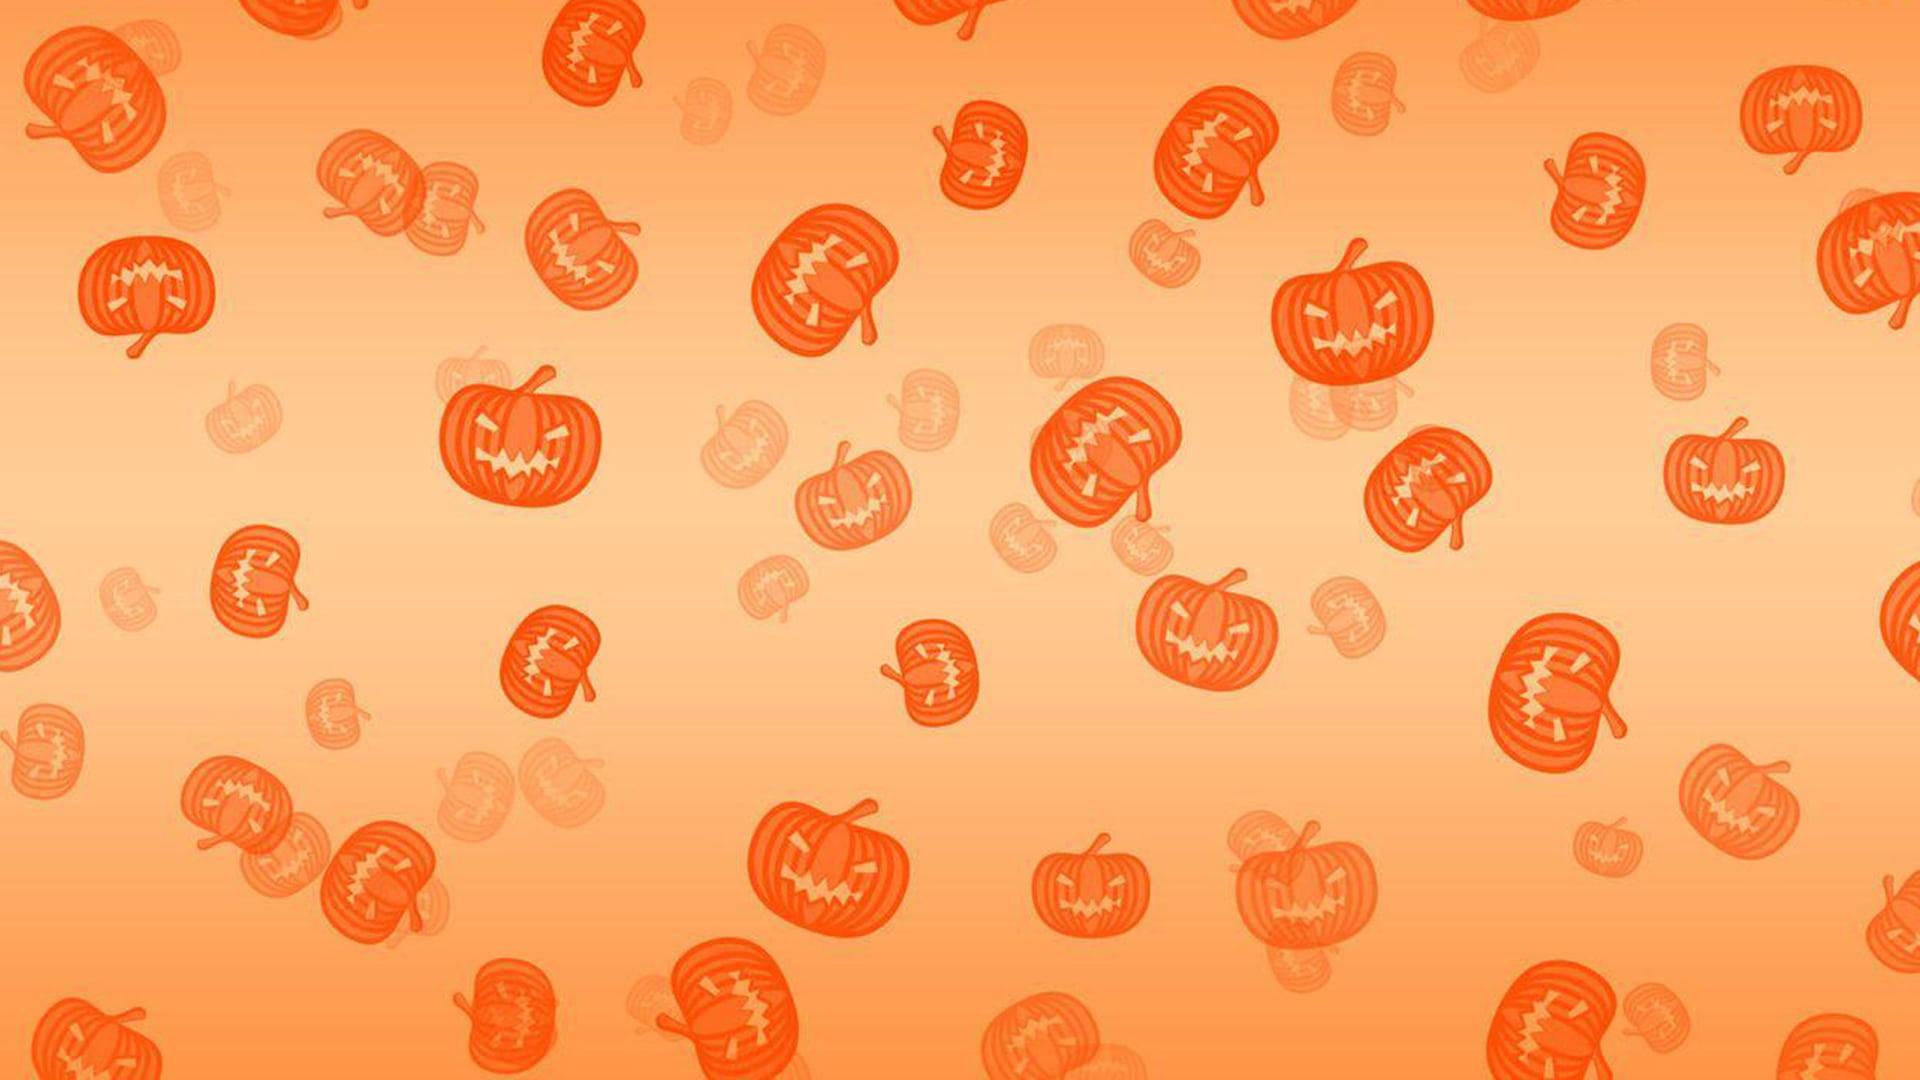 Jacko'-lantern Lindo Para El Escritorio De Halloween Fondo de pantalla